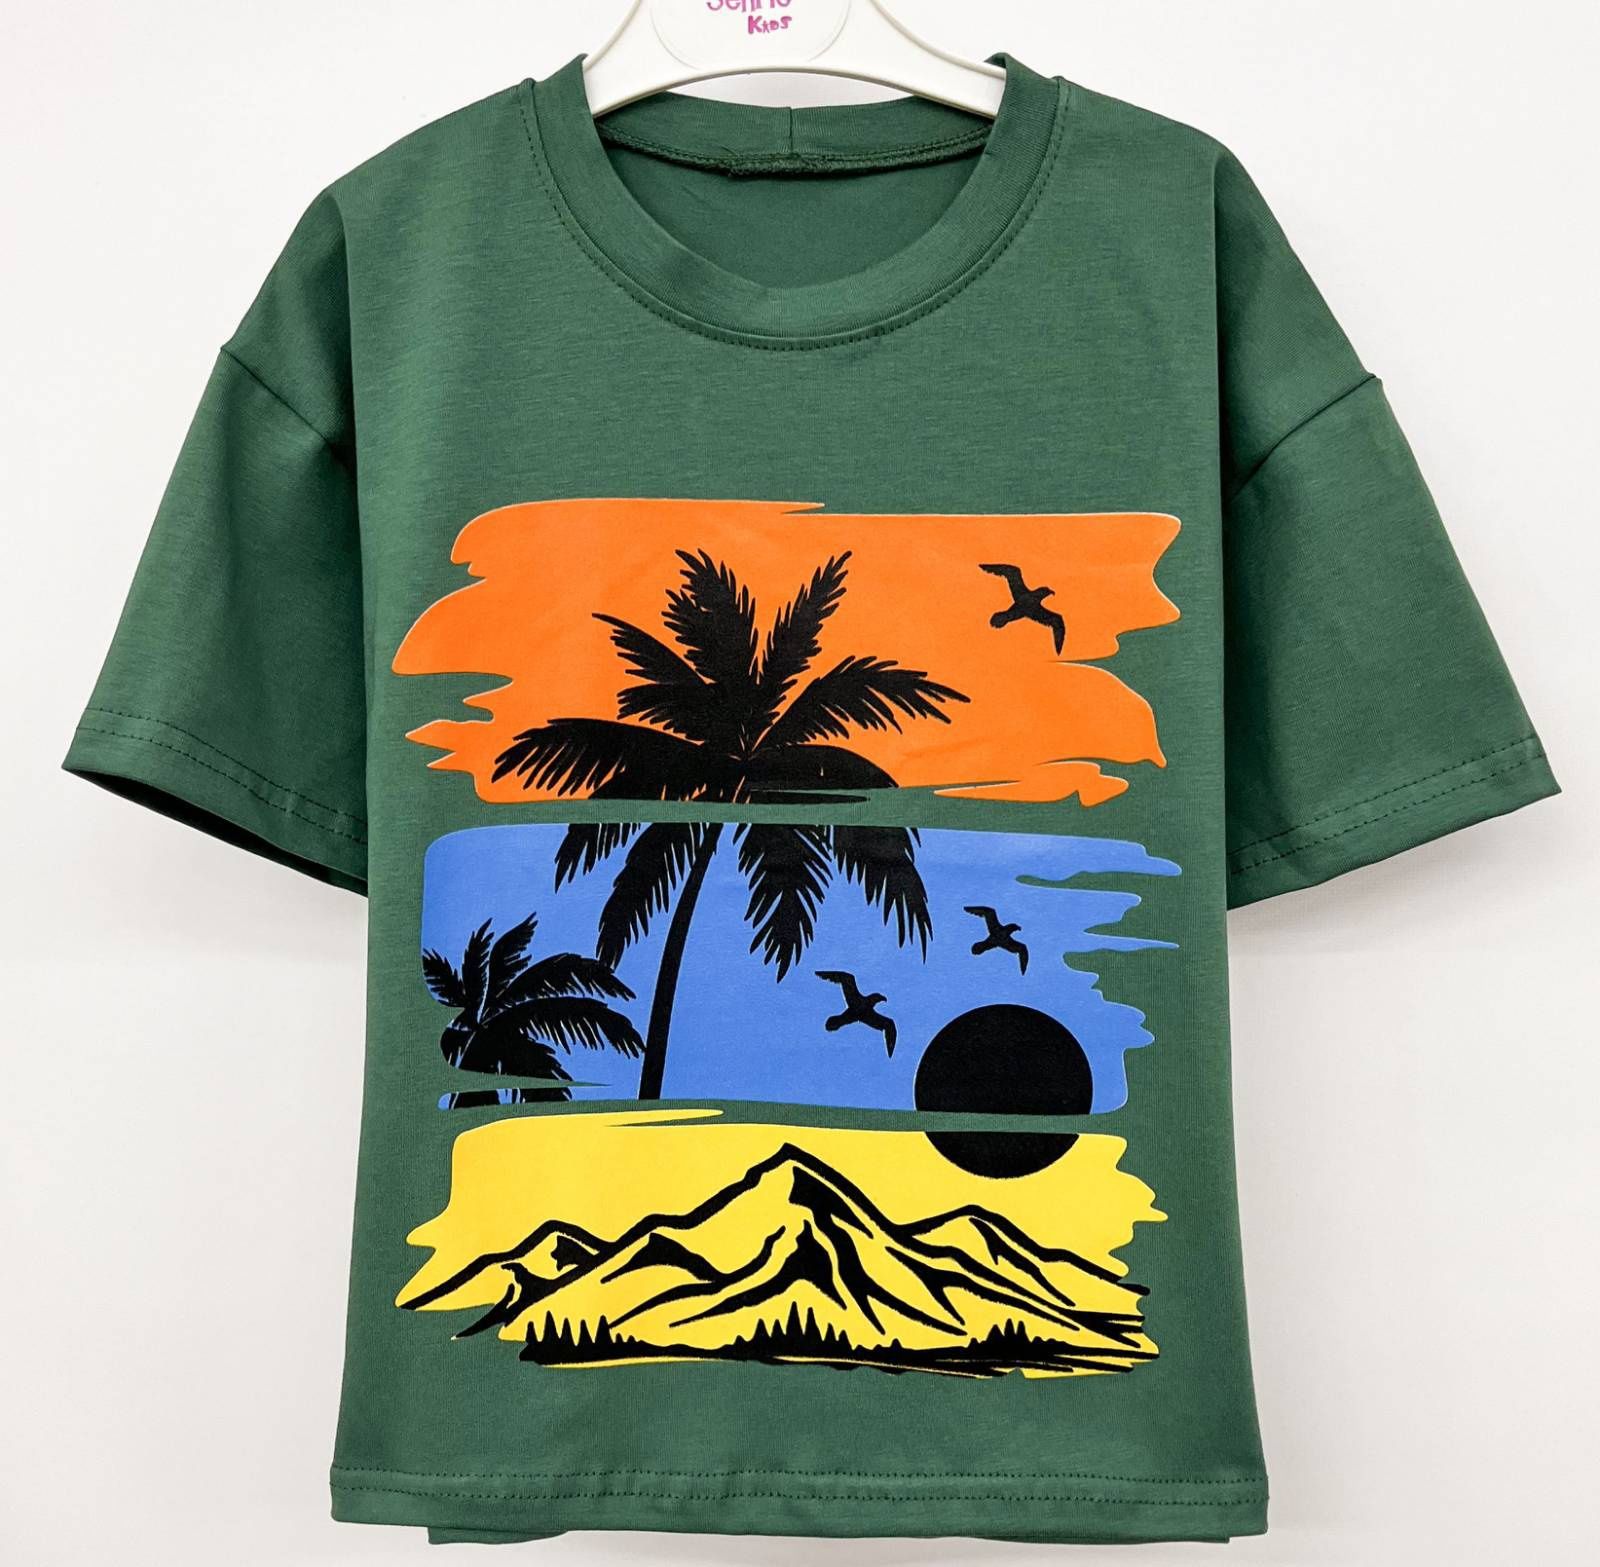 Від 98 до 152  Дитяча футболка для хлопчика для дівчинки літній одяг